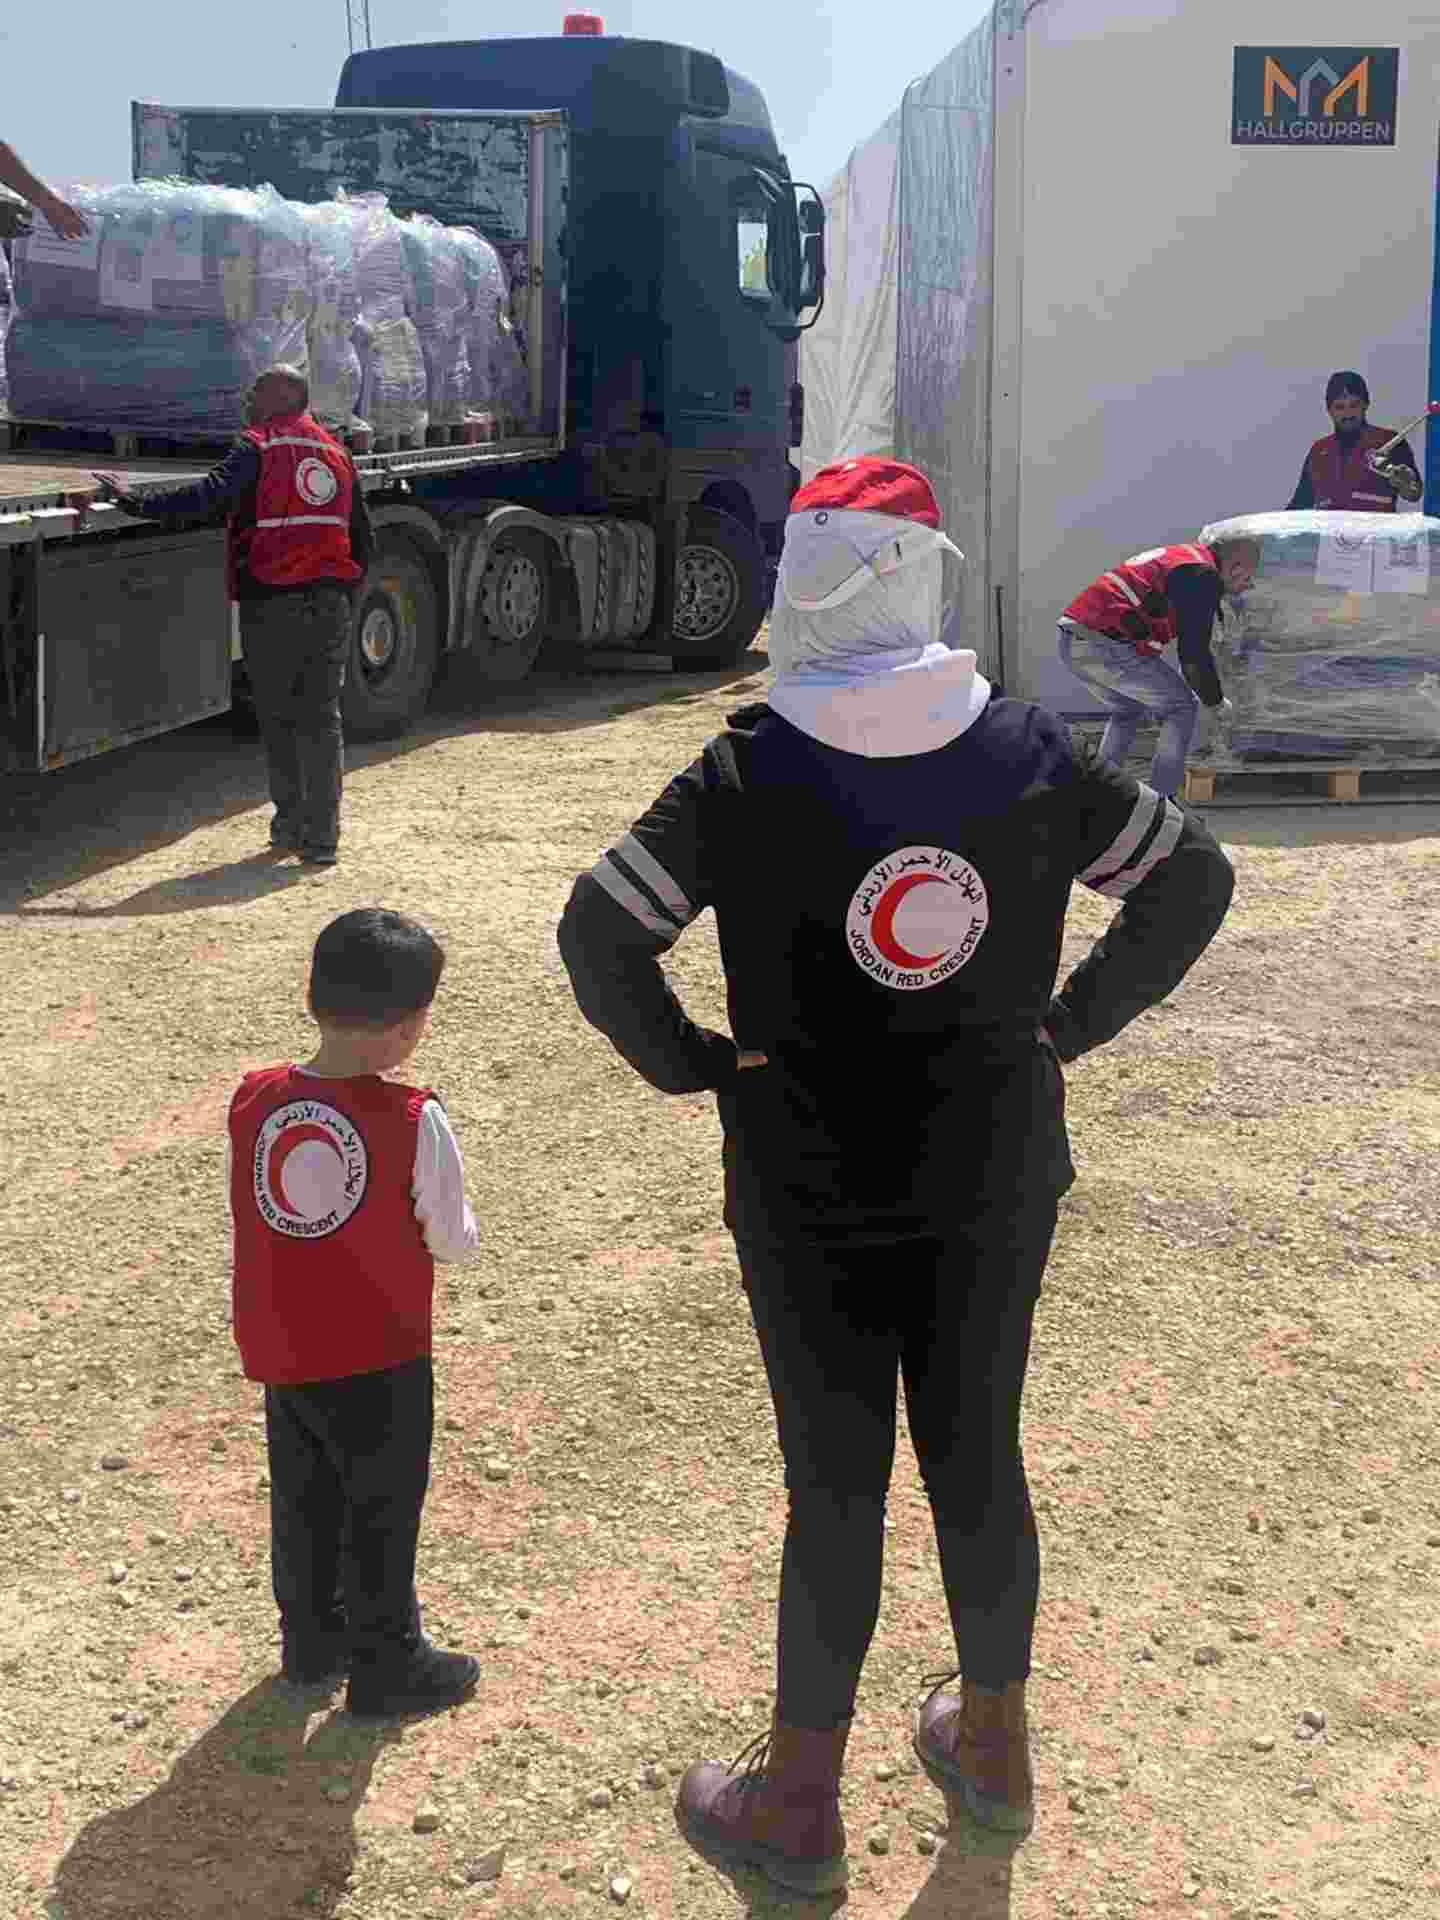 Jordanian Punaisen Puolikuun varaston edustalla lastataan avustuskuormaa kohti Gazaa.